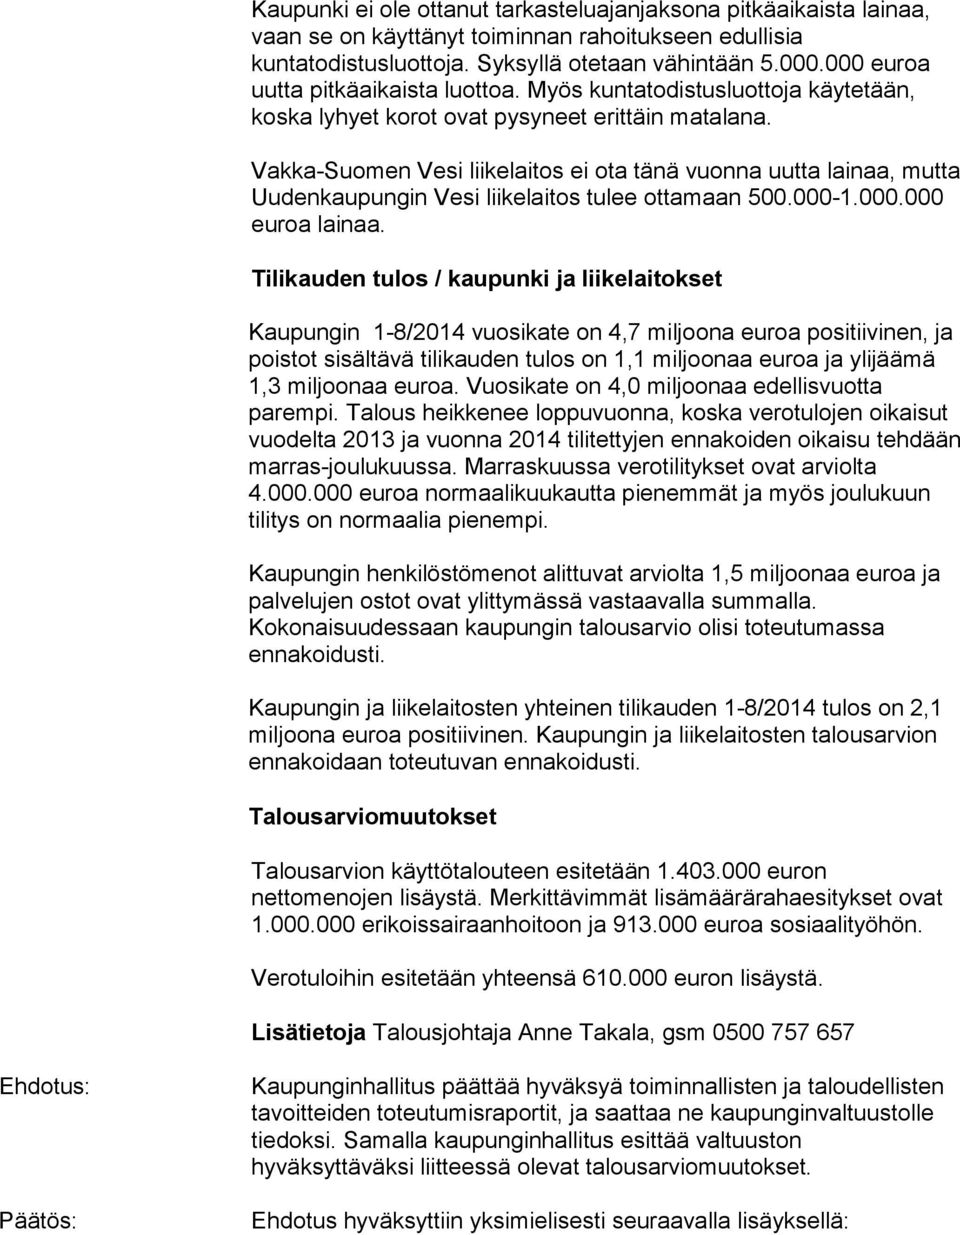 Vakka-Suomen Vesi liikelaitos ei ota tänä vuonna uutta lainaa, mutta Uudenkaupungin Vesi liikelaitos tulee ottamaan 500.000-1.000.000 euroa lainaa.